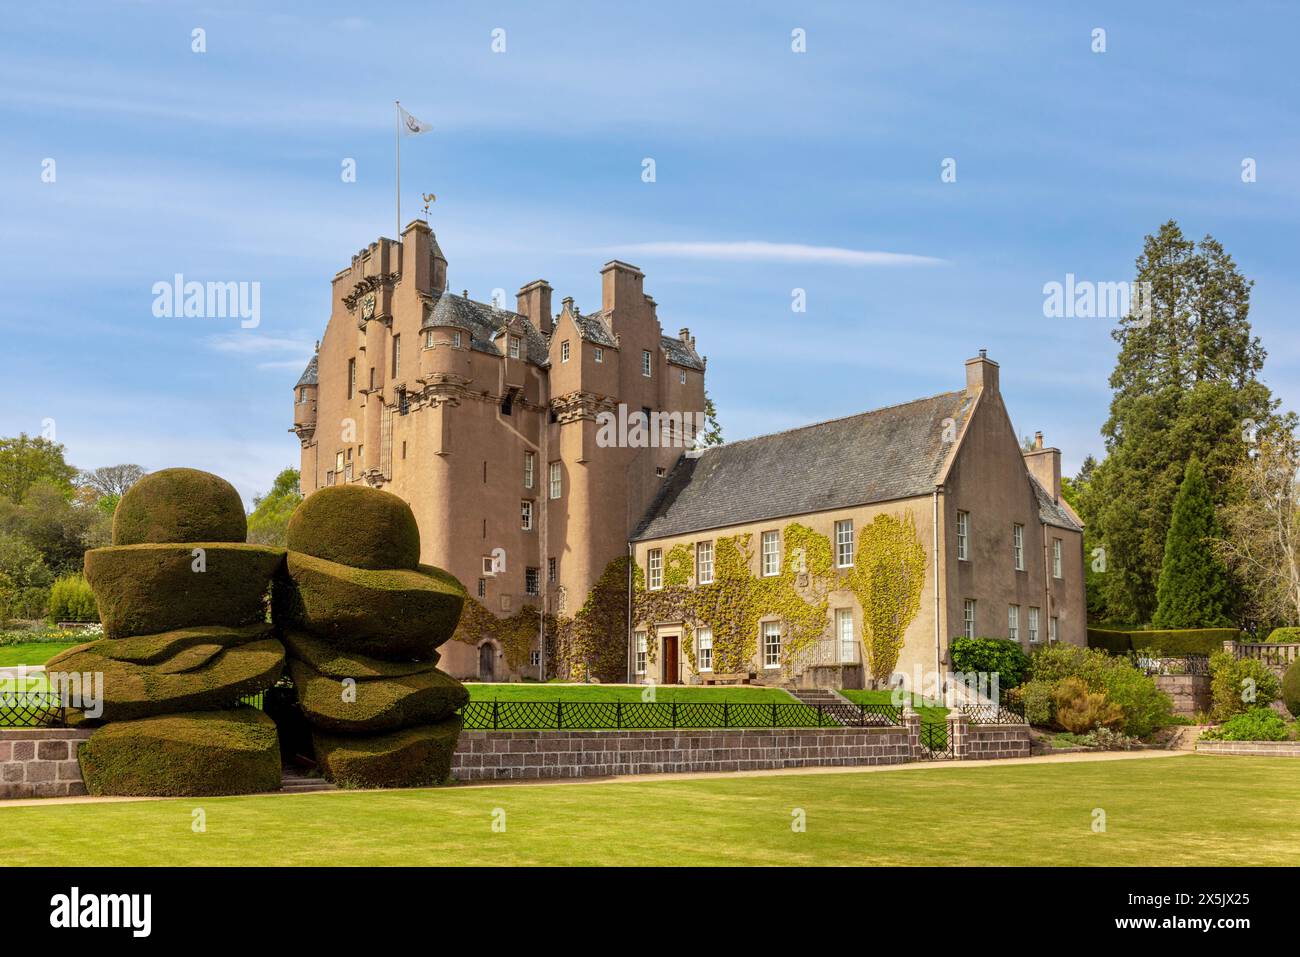 Le château de Crathes, une tour écossaise classique située dans l'Aberdeenshire, en Écosse, possède de charmantes tourelles et de beaux jardins. Banque D'Images